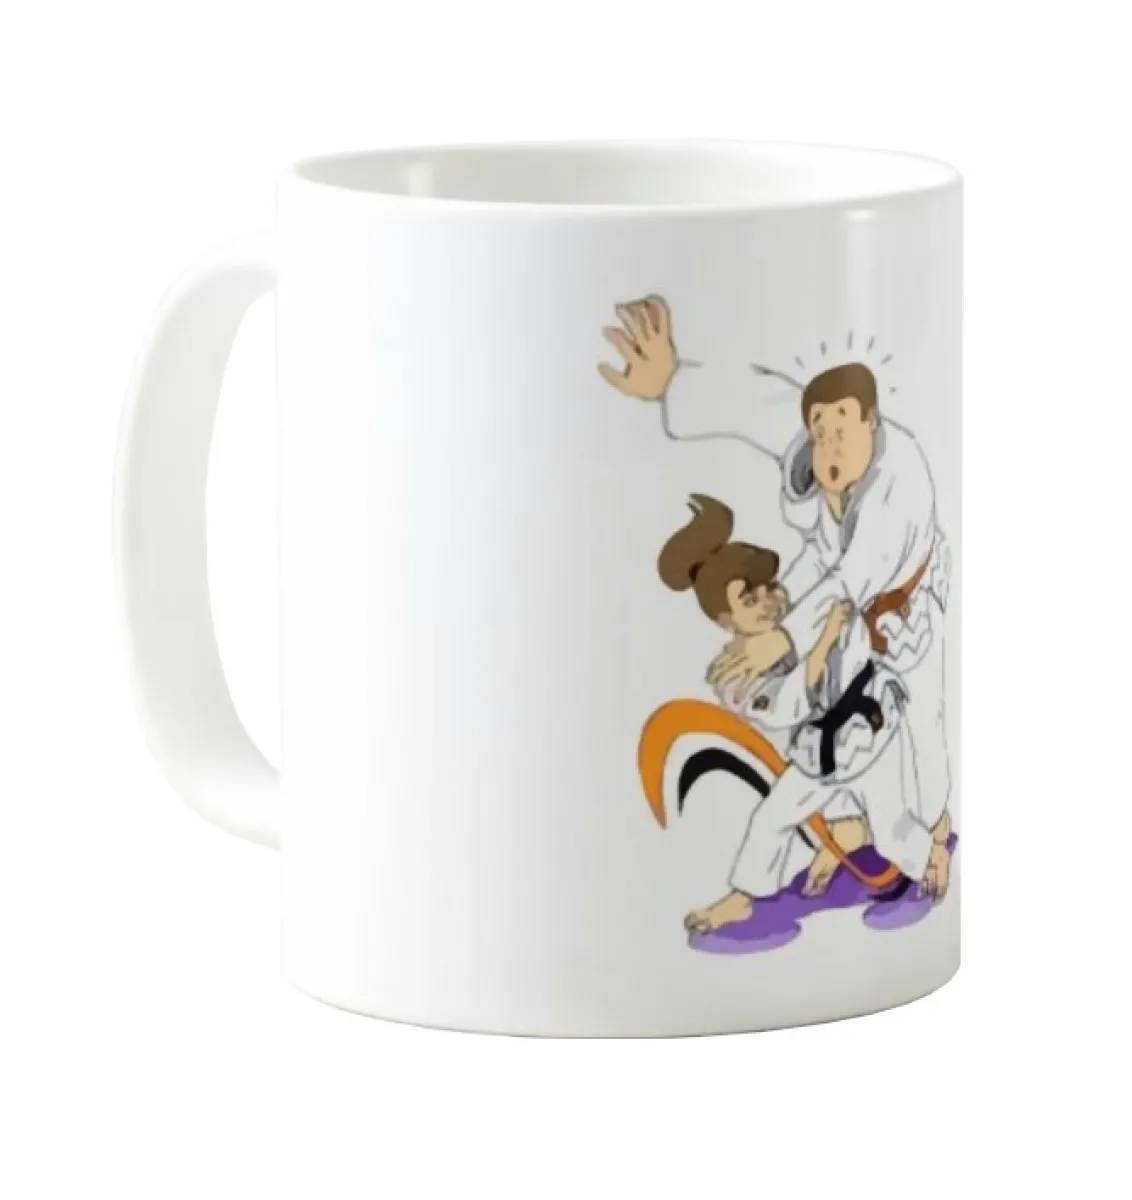 Judo shoulder throw mug